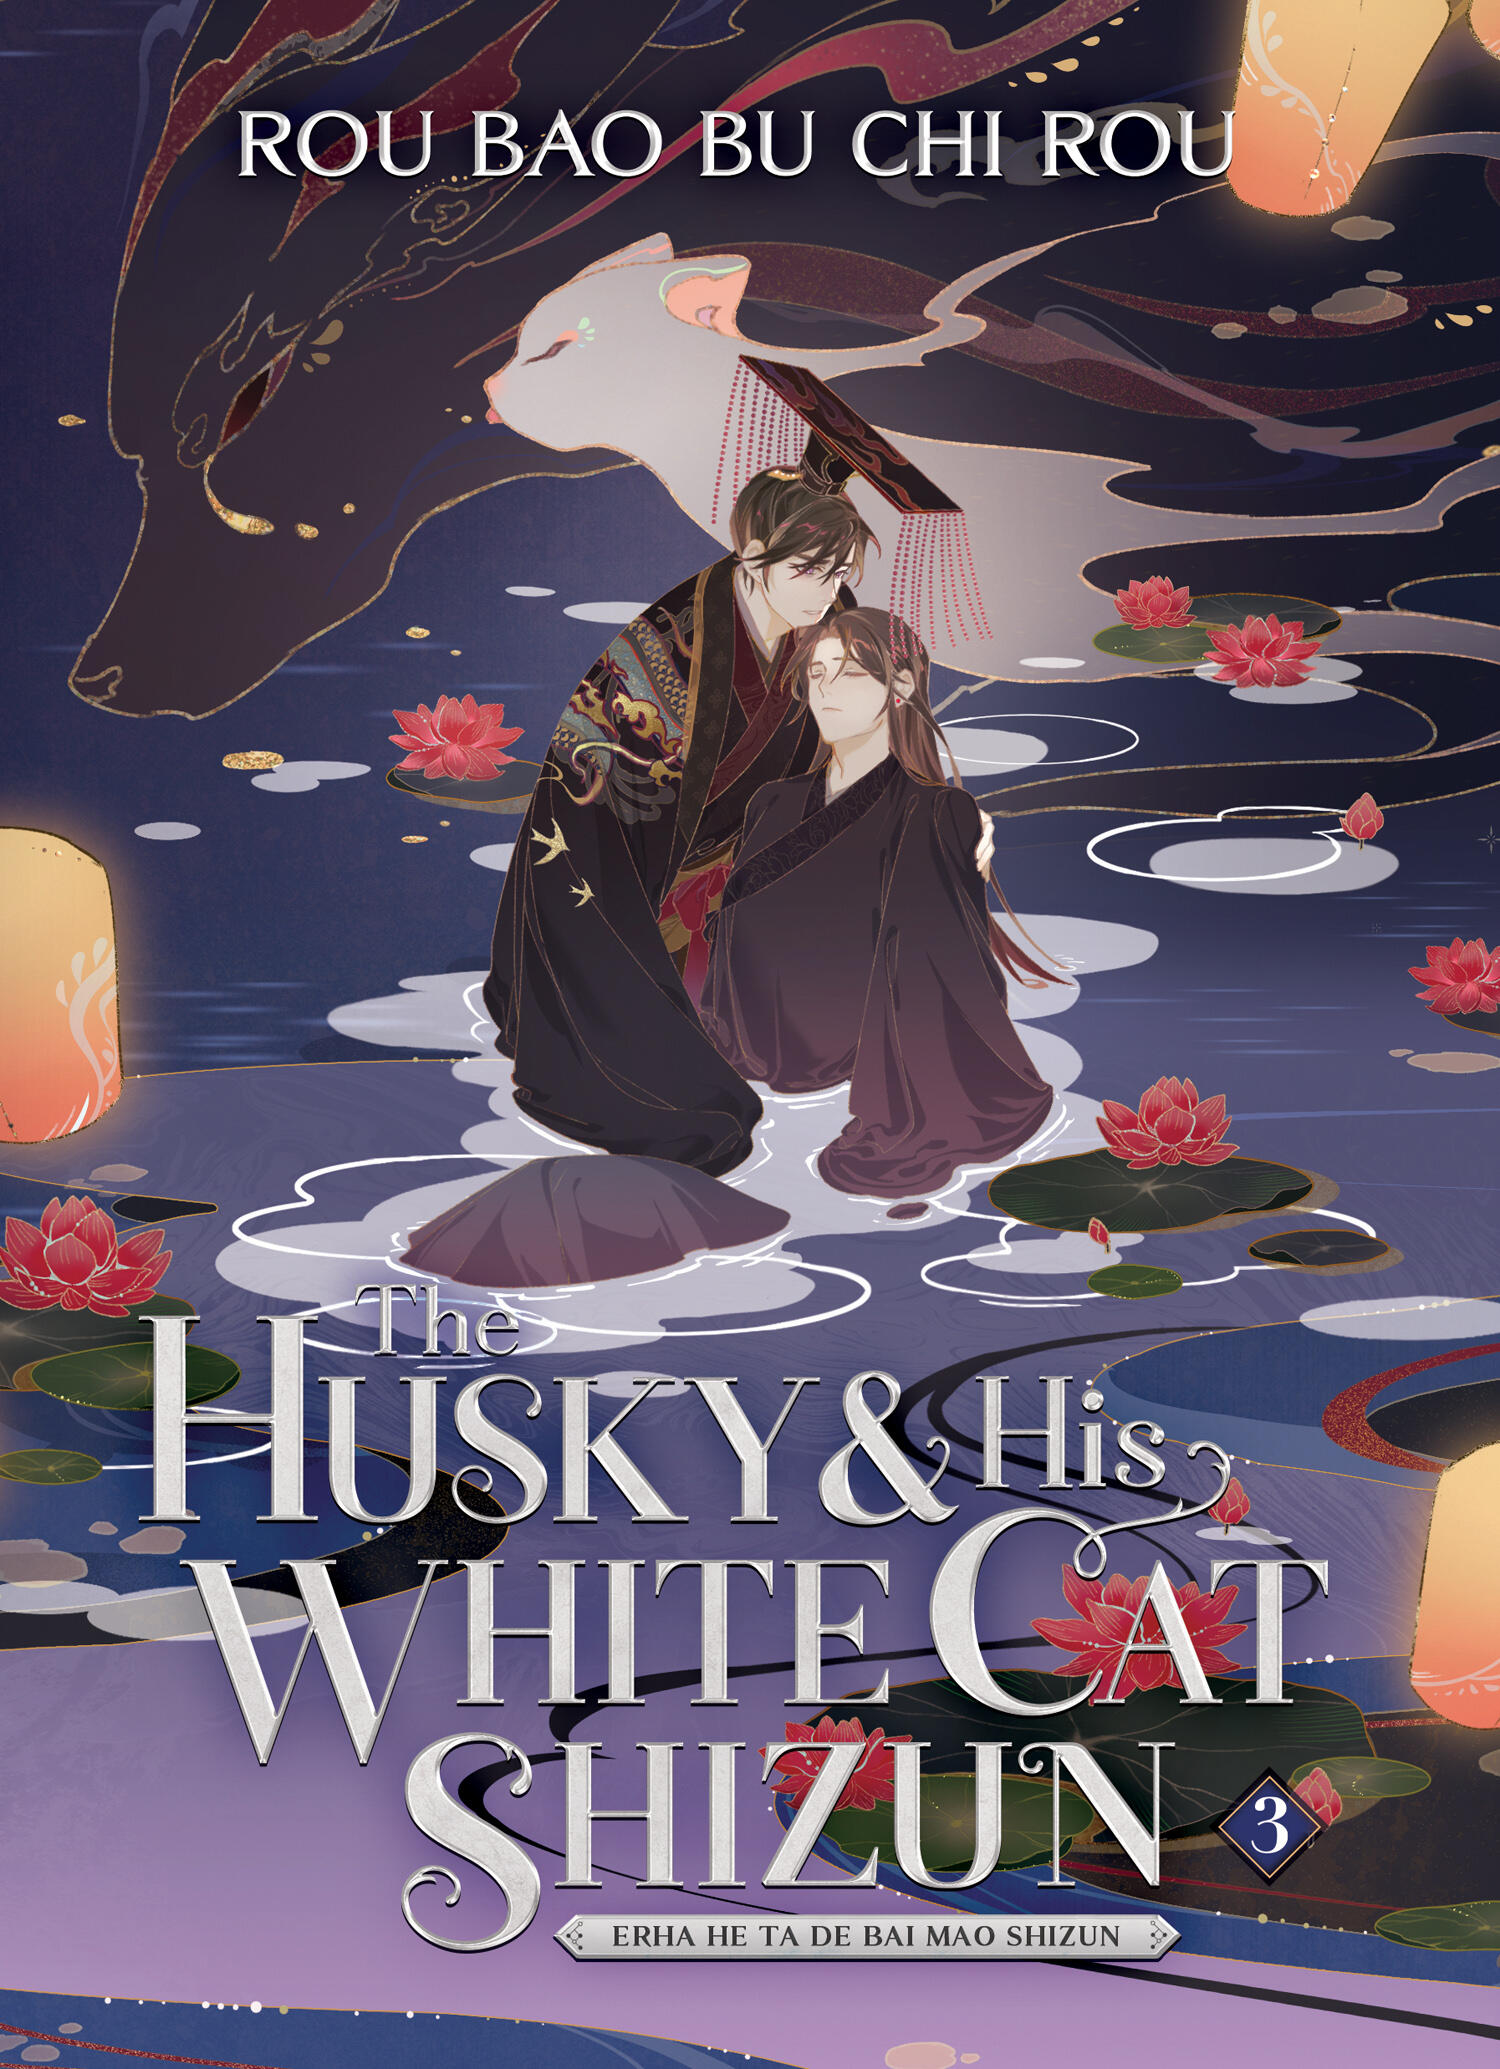 The Husky and His White Cat Shizun: Erha He Ta De Bai Mao Shizun (Novel) - Volume 3 | Rou Bao Bu Chi Rou